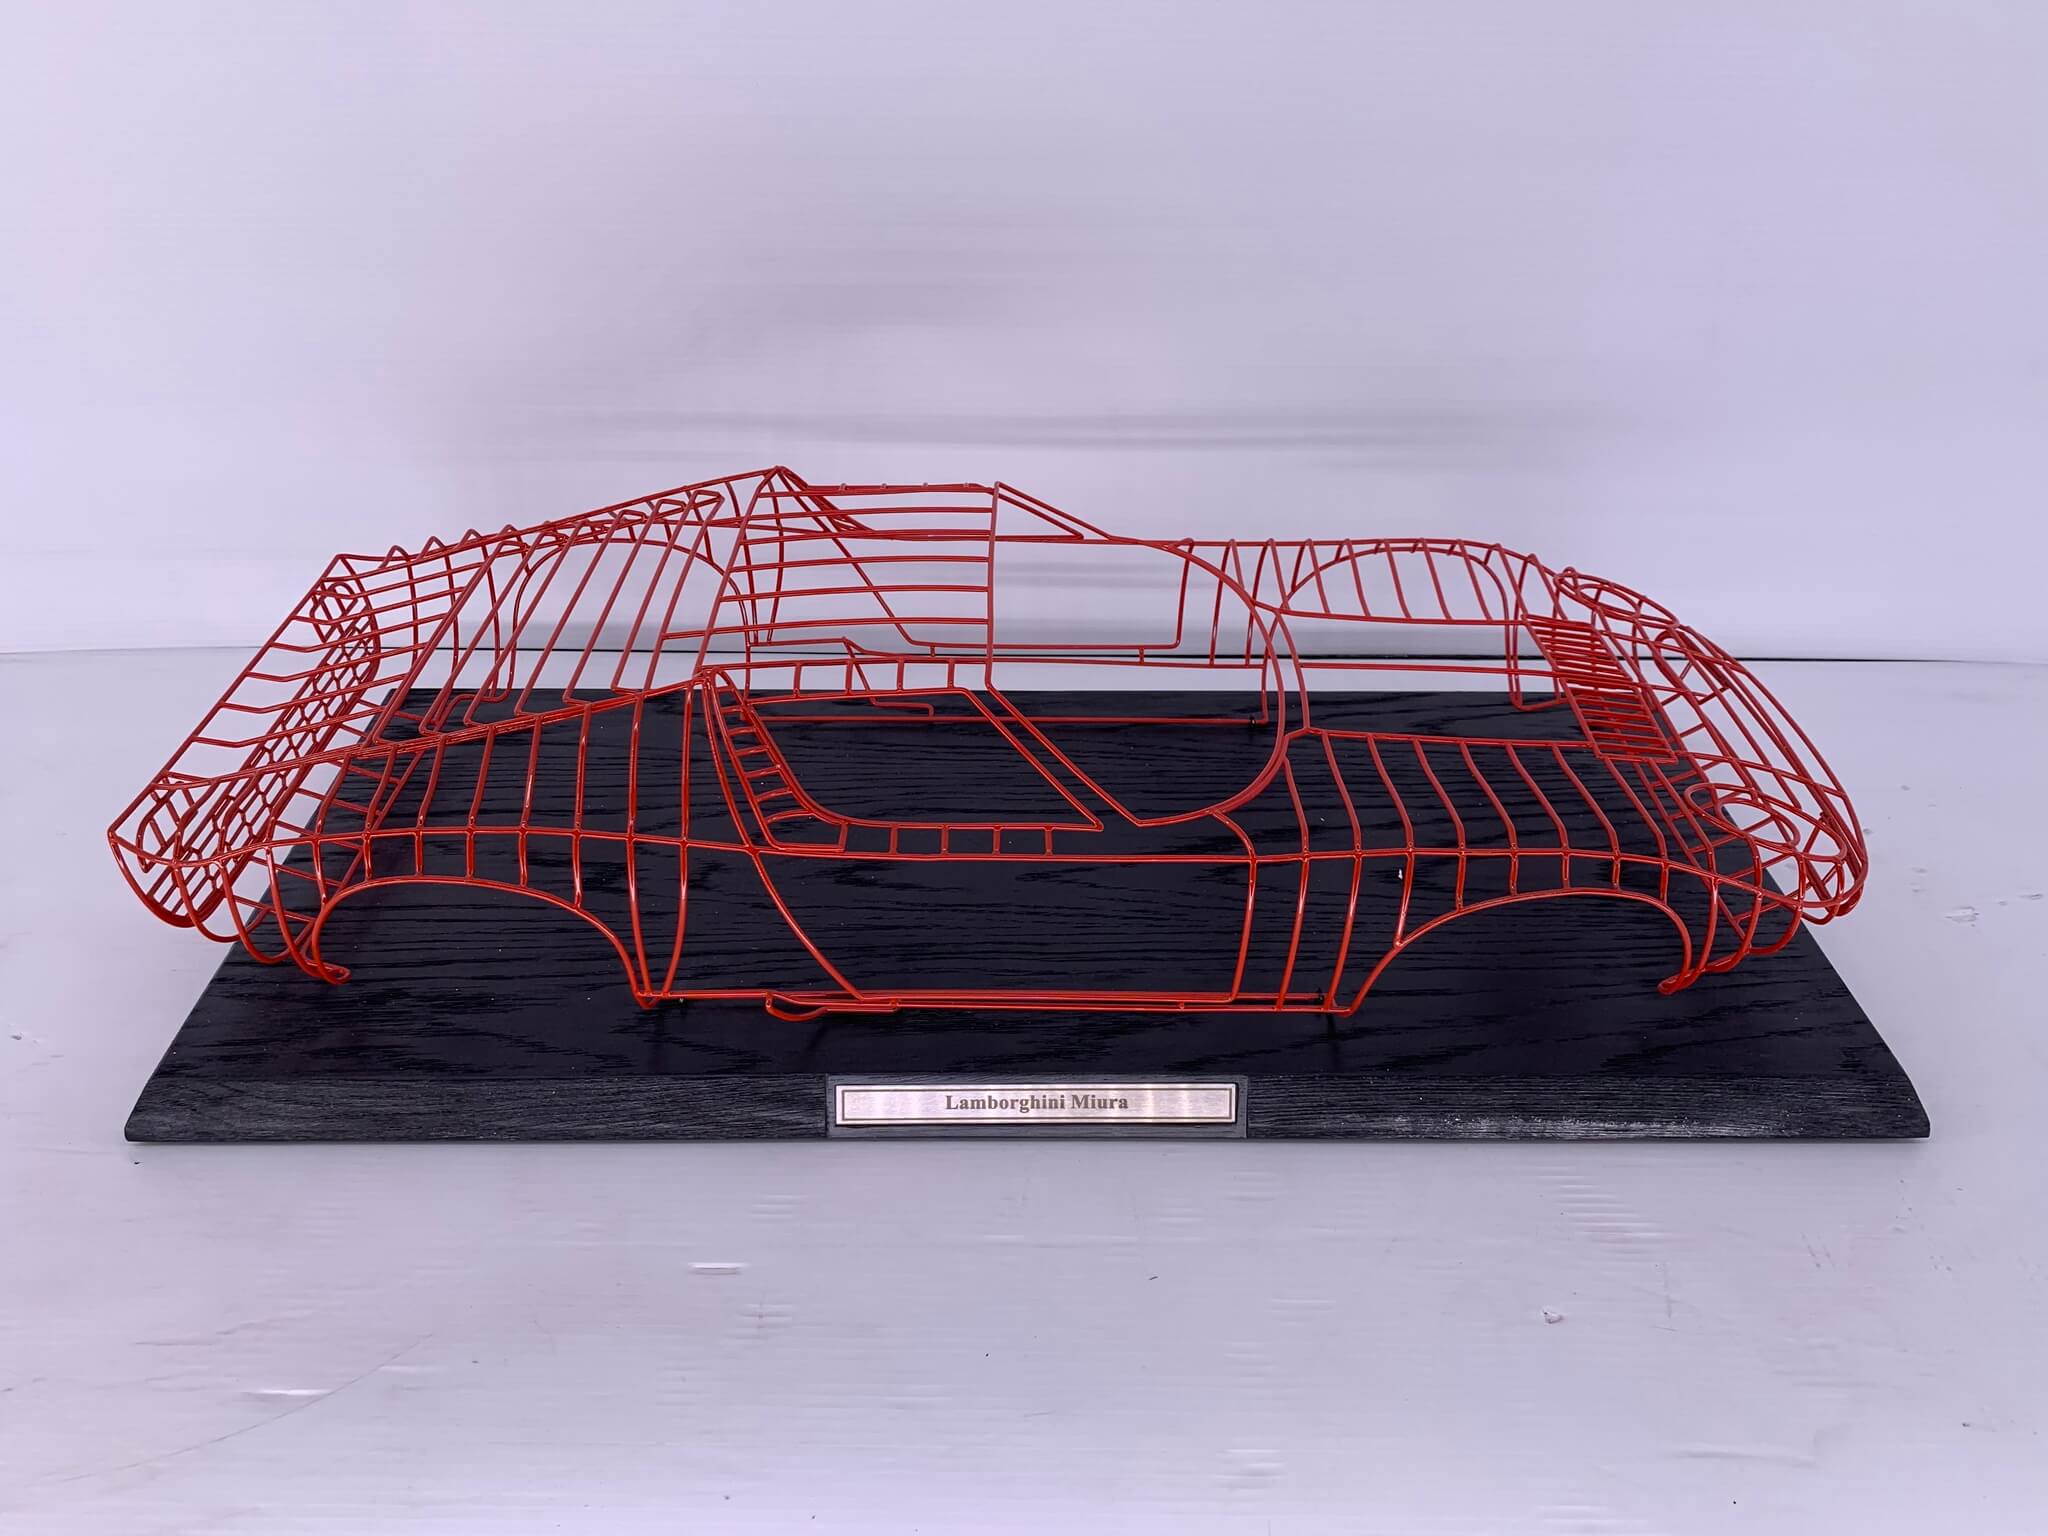 Lamborghini Miura Sculpture (36" x 16")